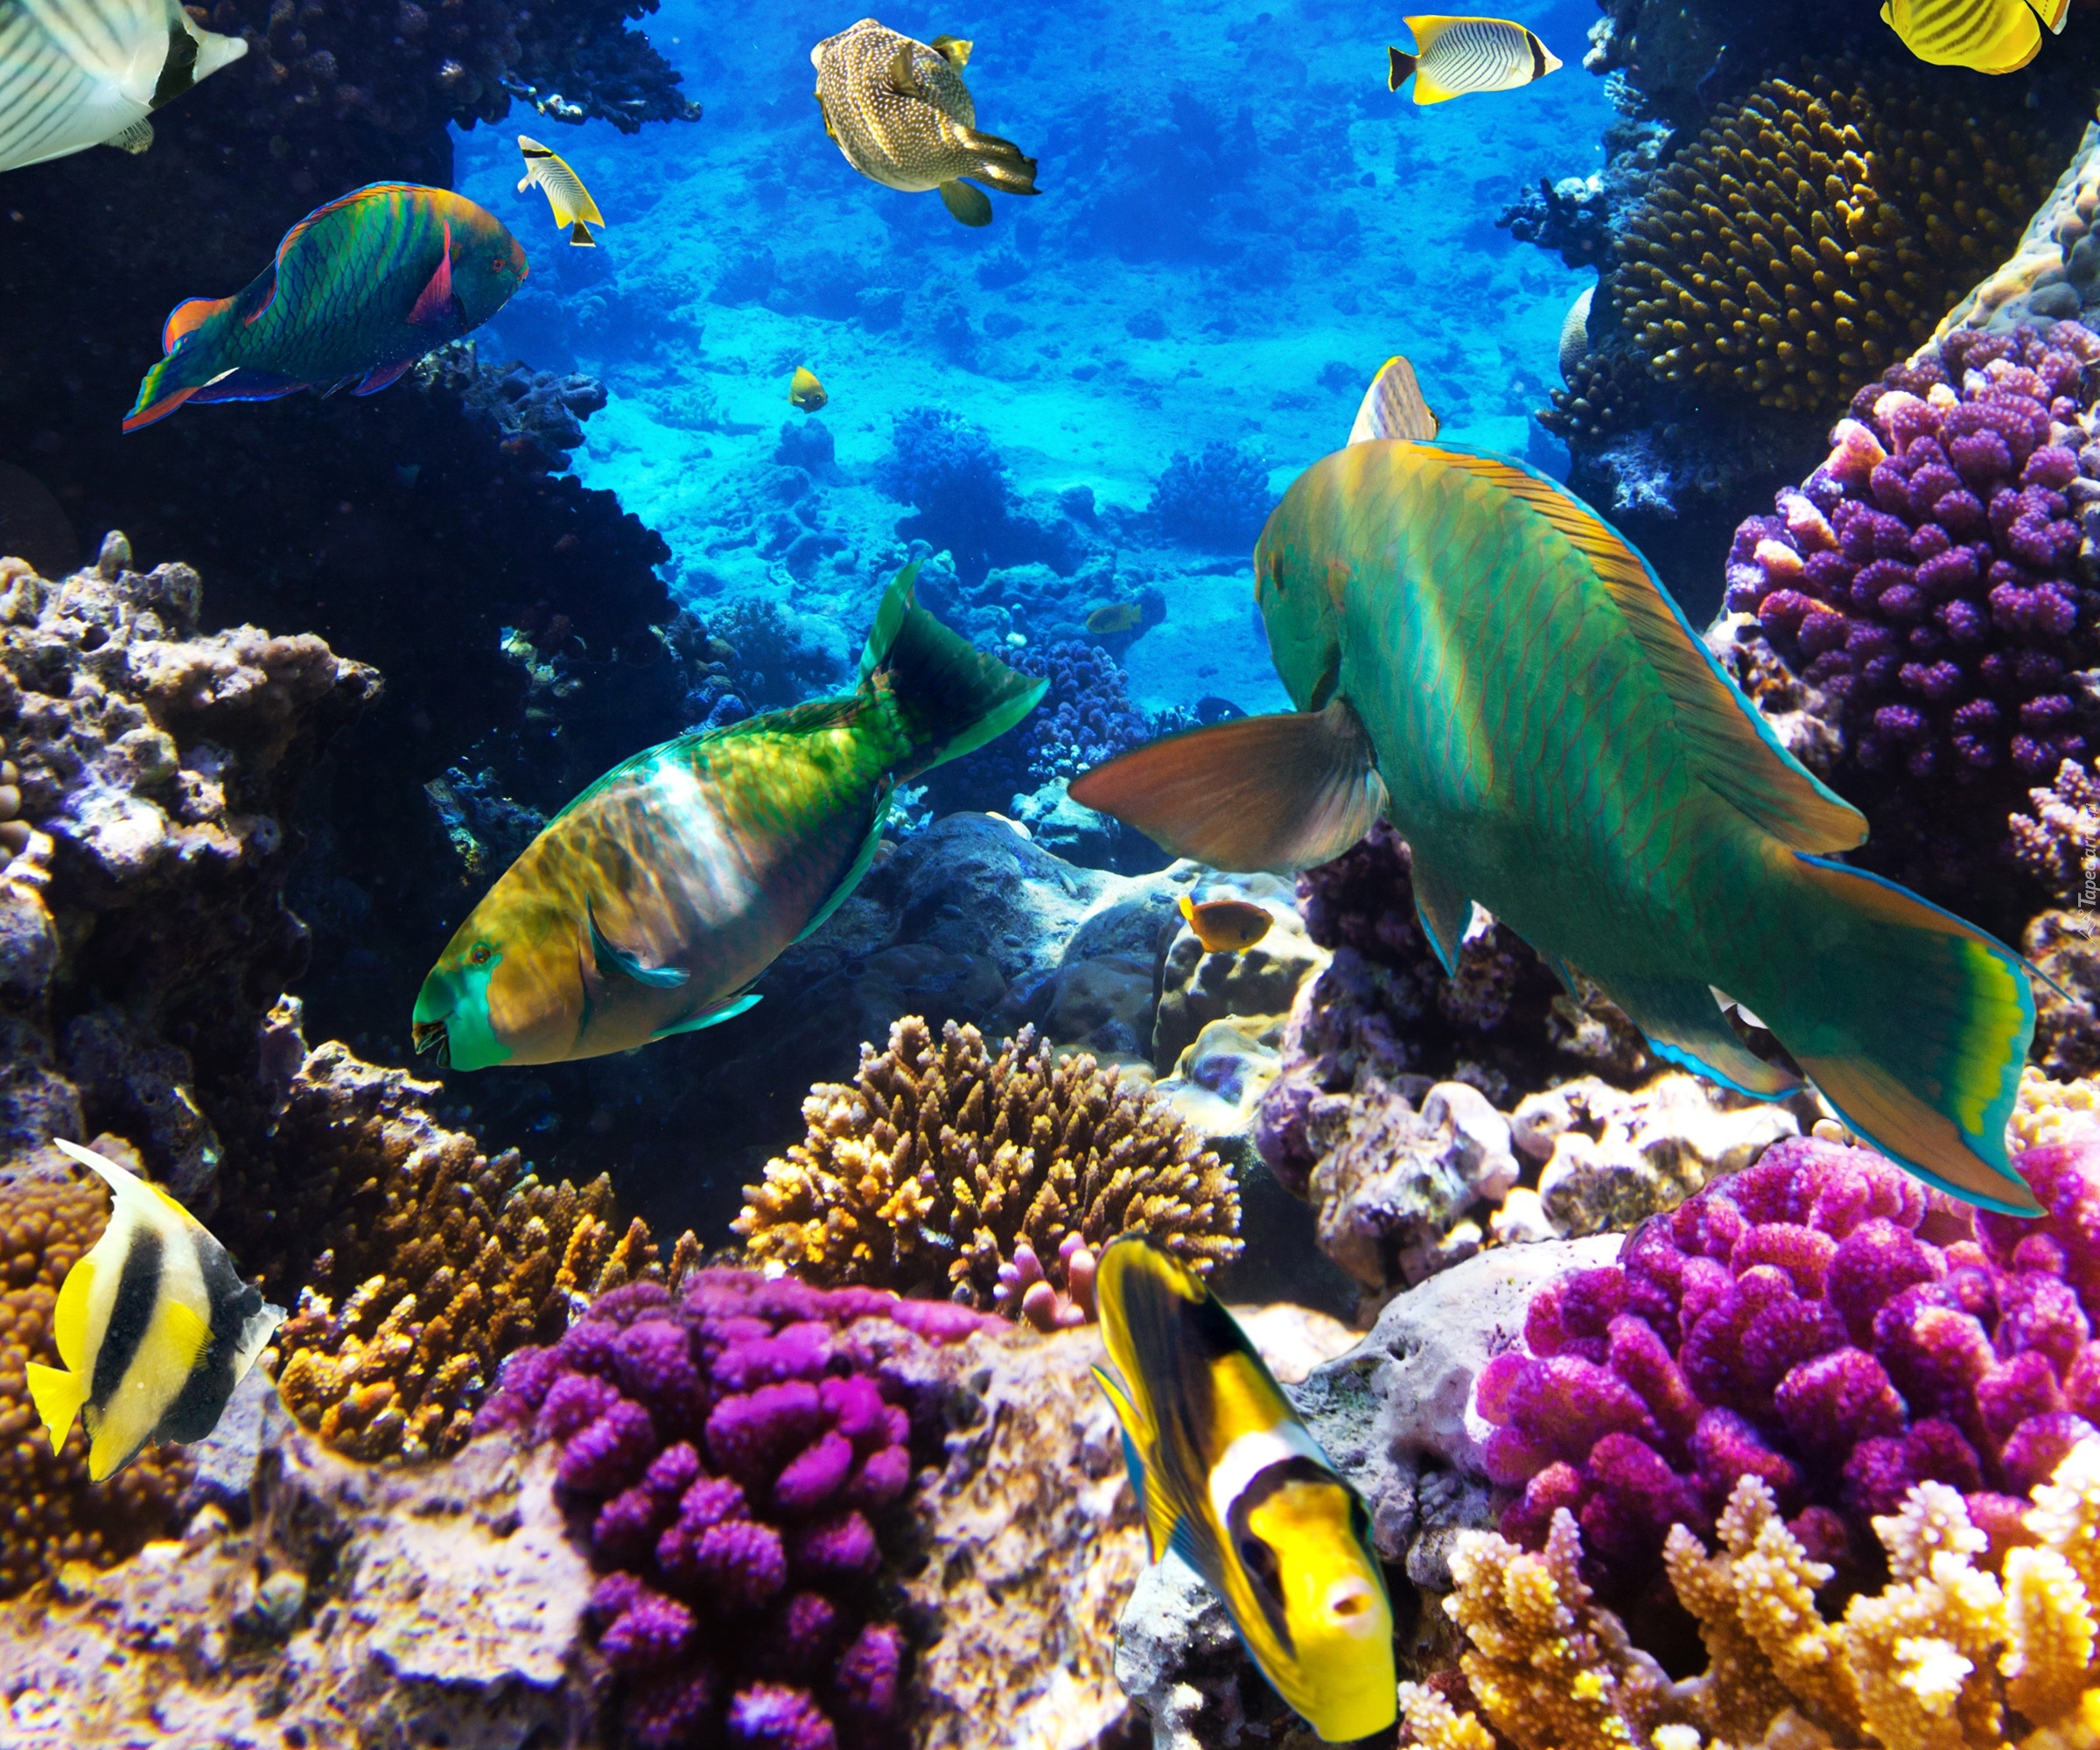 Rafa koralowa, Ryby, Morskie głębiny

